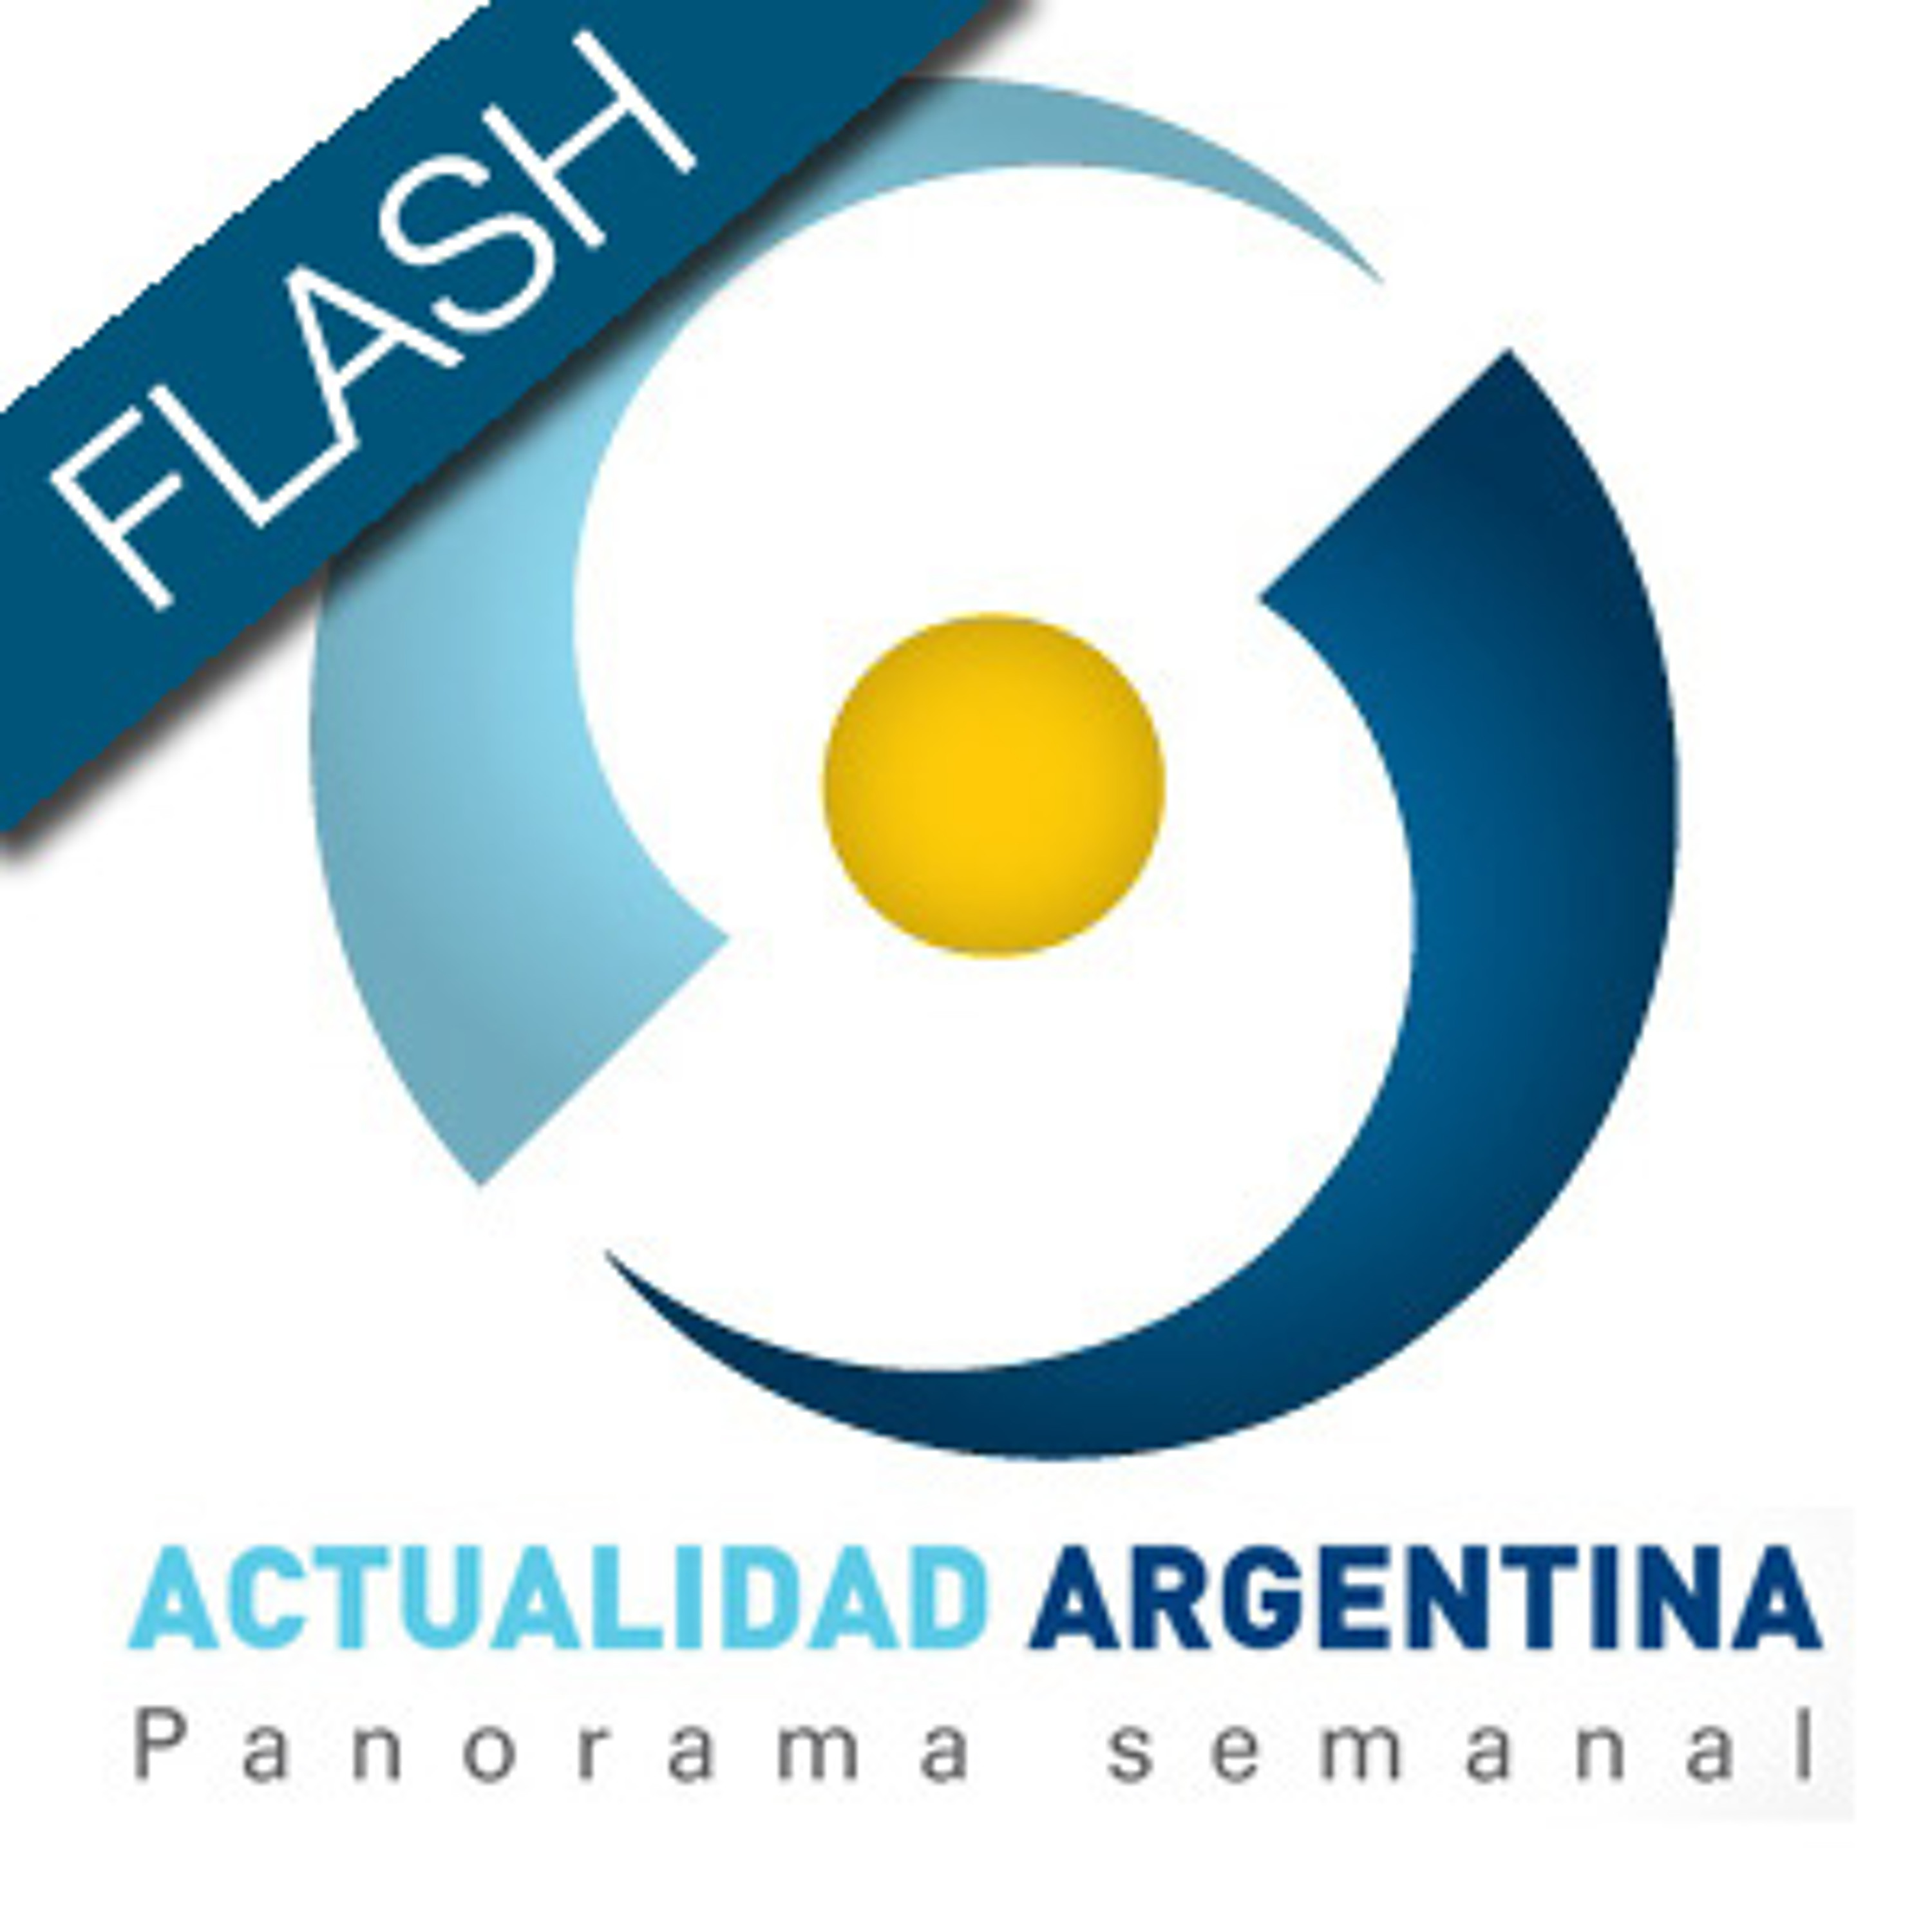 FLASH ACTUALIDAD ARGENTINA 1 Mar '12